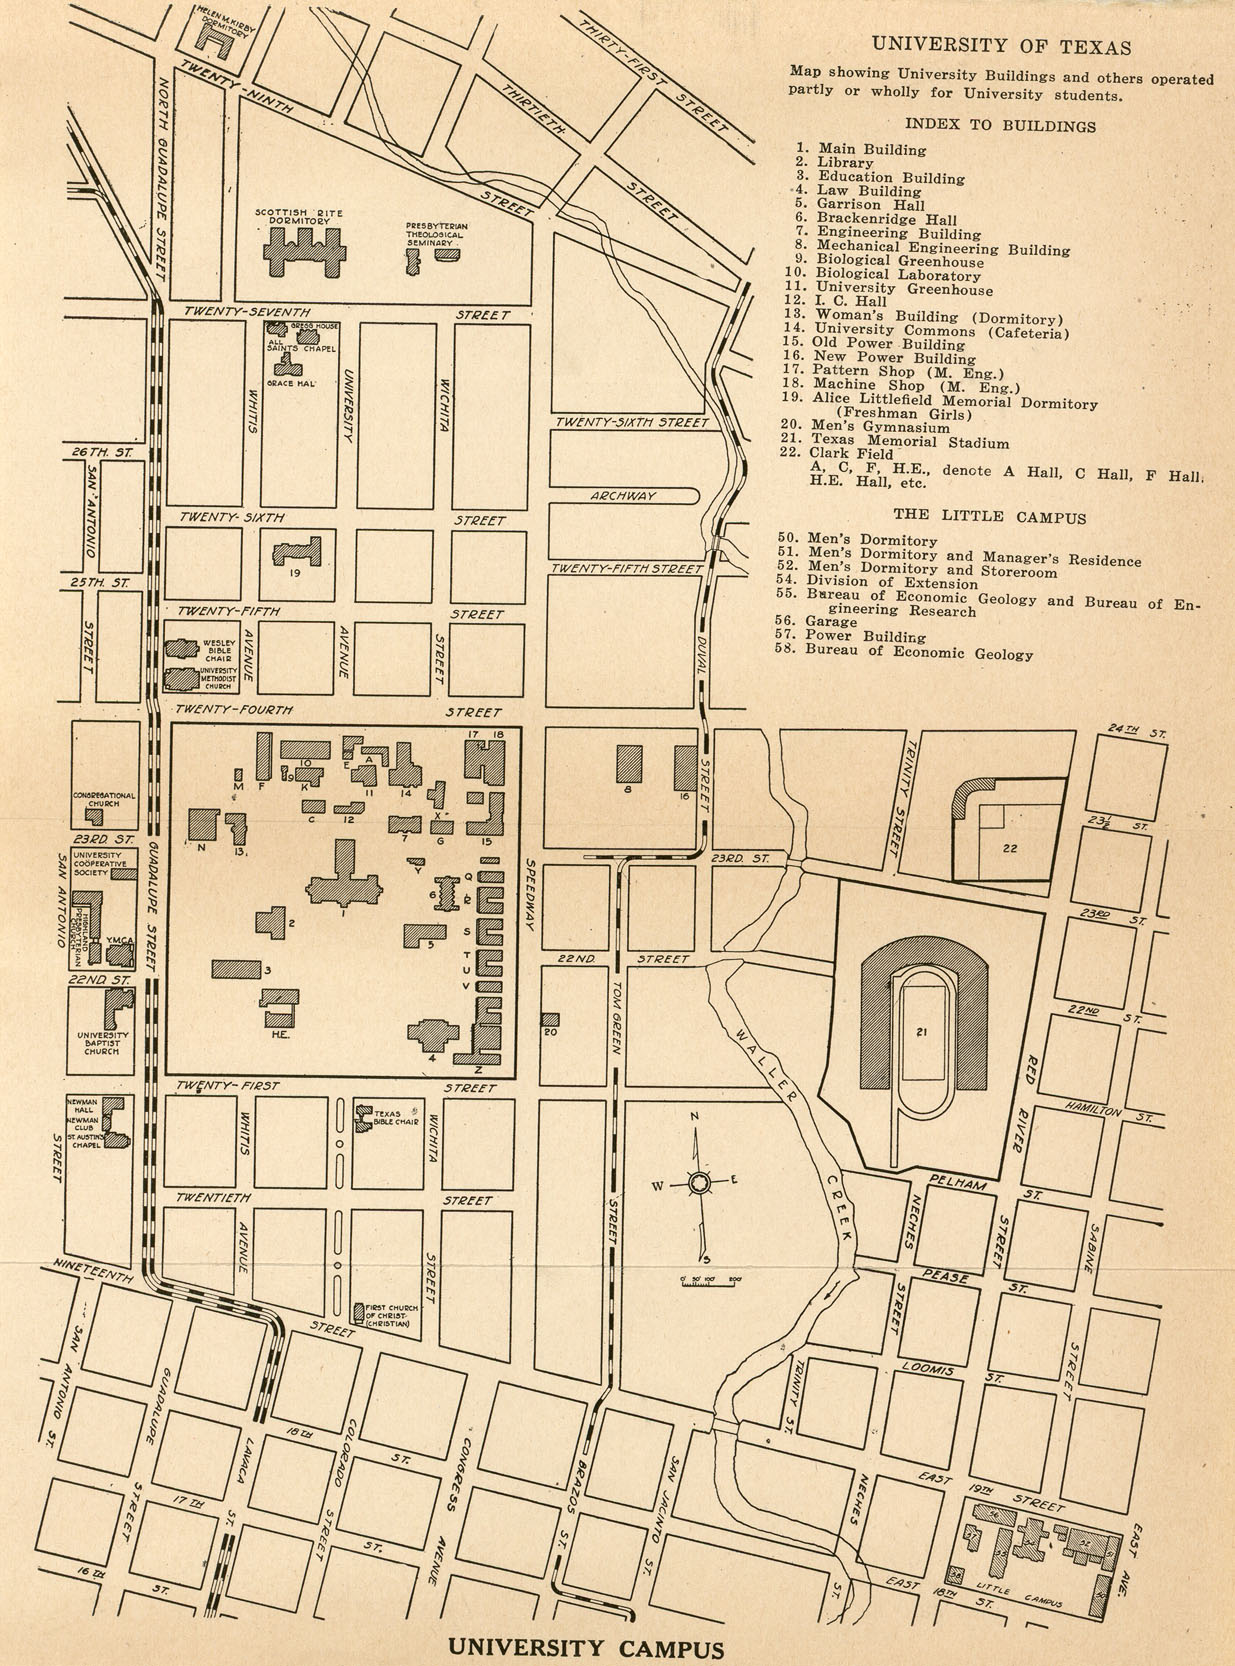 http://www.lib.utexas.edu/maps/ut_austin/university_of_texas-1928.jpg